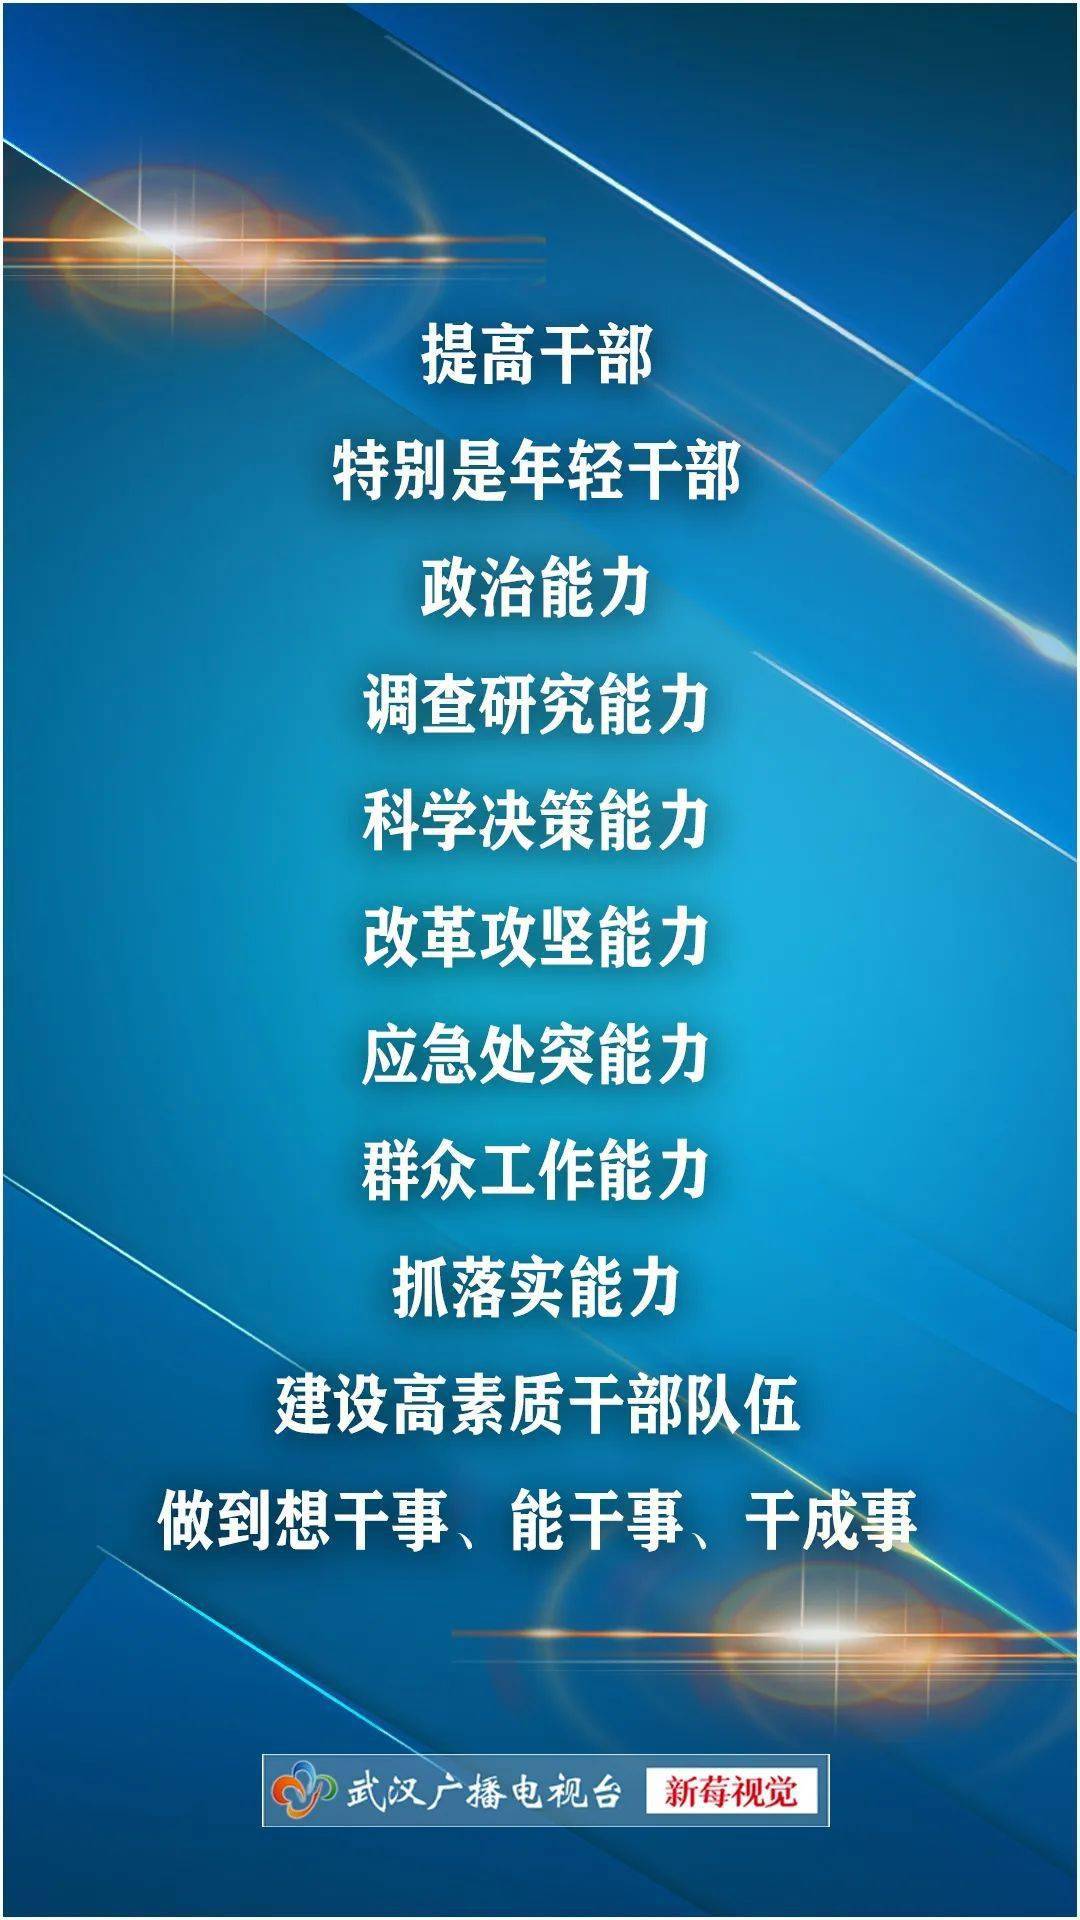 王忠林寄语年轻干部:提高七种能力,做到想干事能干事干成事